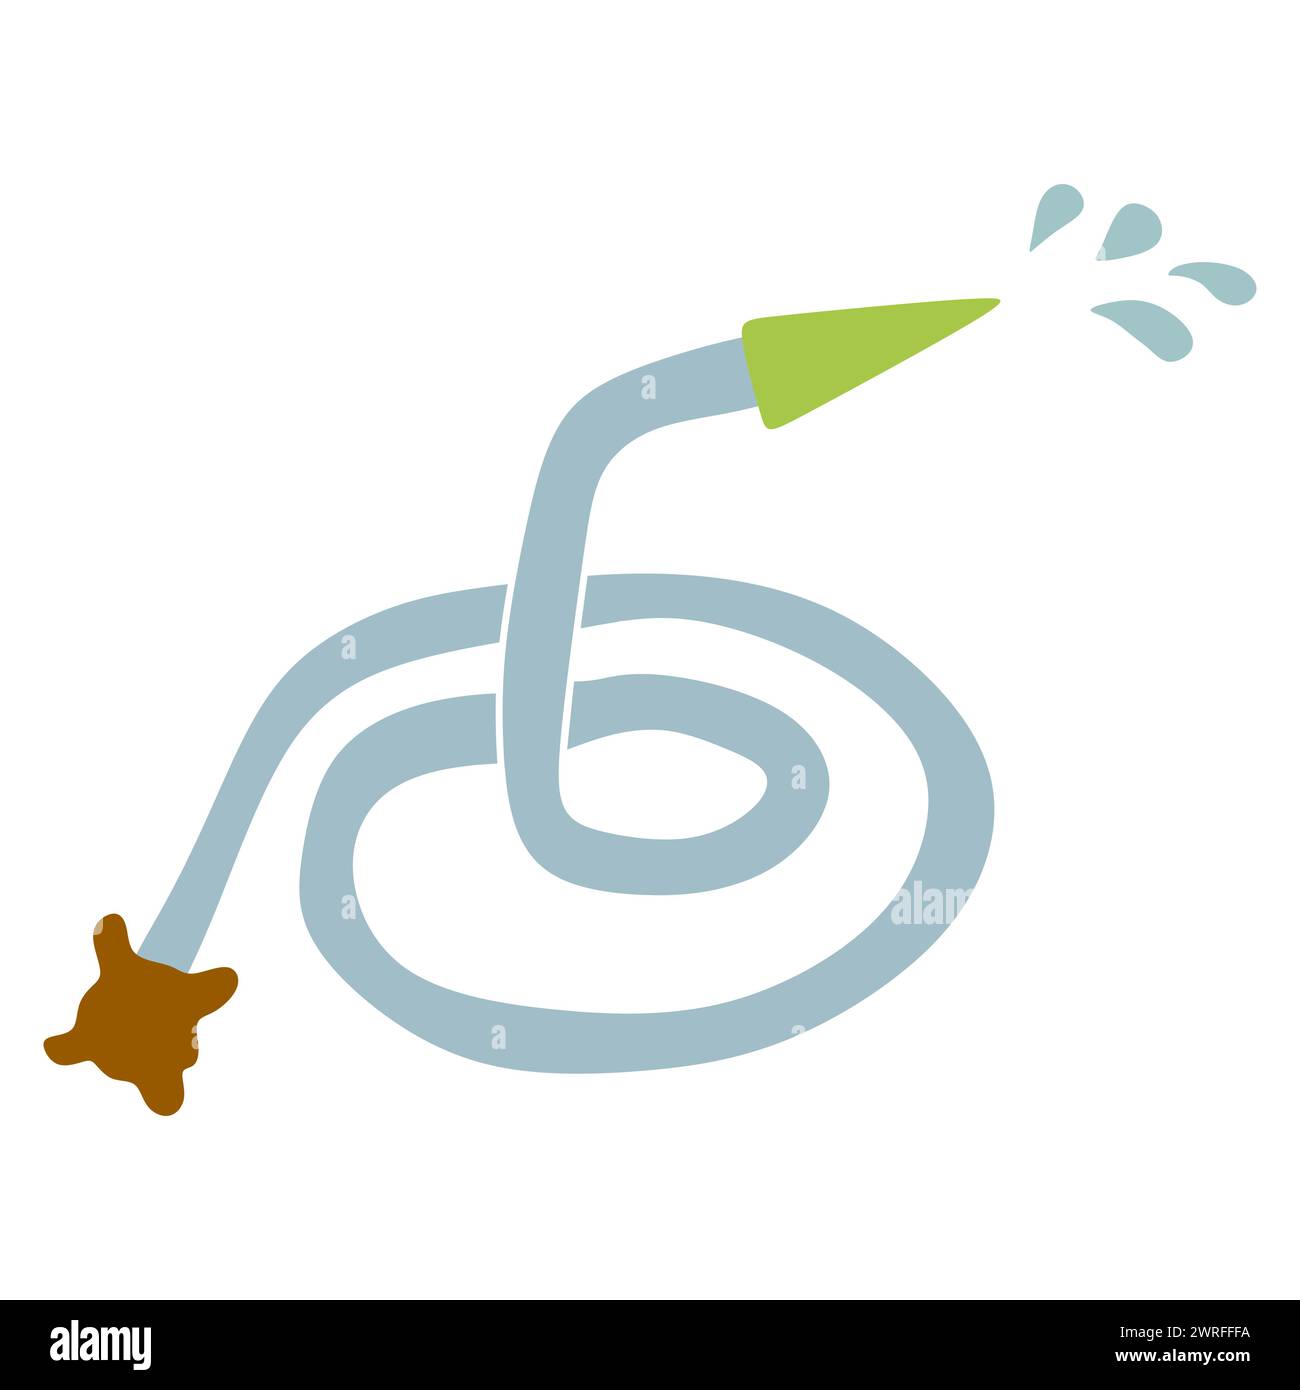 Gartenbewässerungsschlauch flaches Symbol mit Wassertropfen und Wasserhahn. Zeichentrickdesign Vektor-Illustration, Gartenwerkzeugsymbol. Gartenfederausrüstung Isolieren Stock Vektor